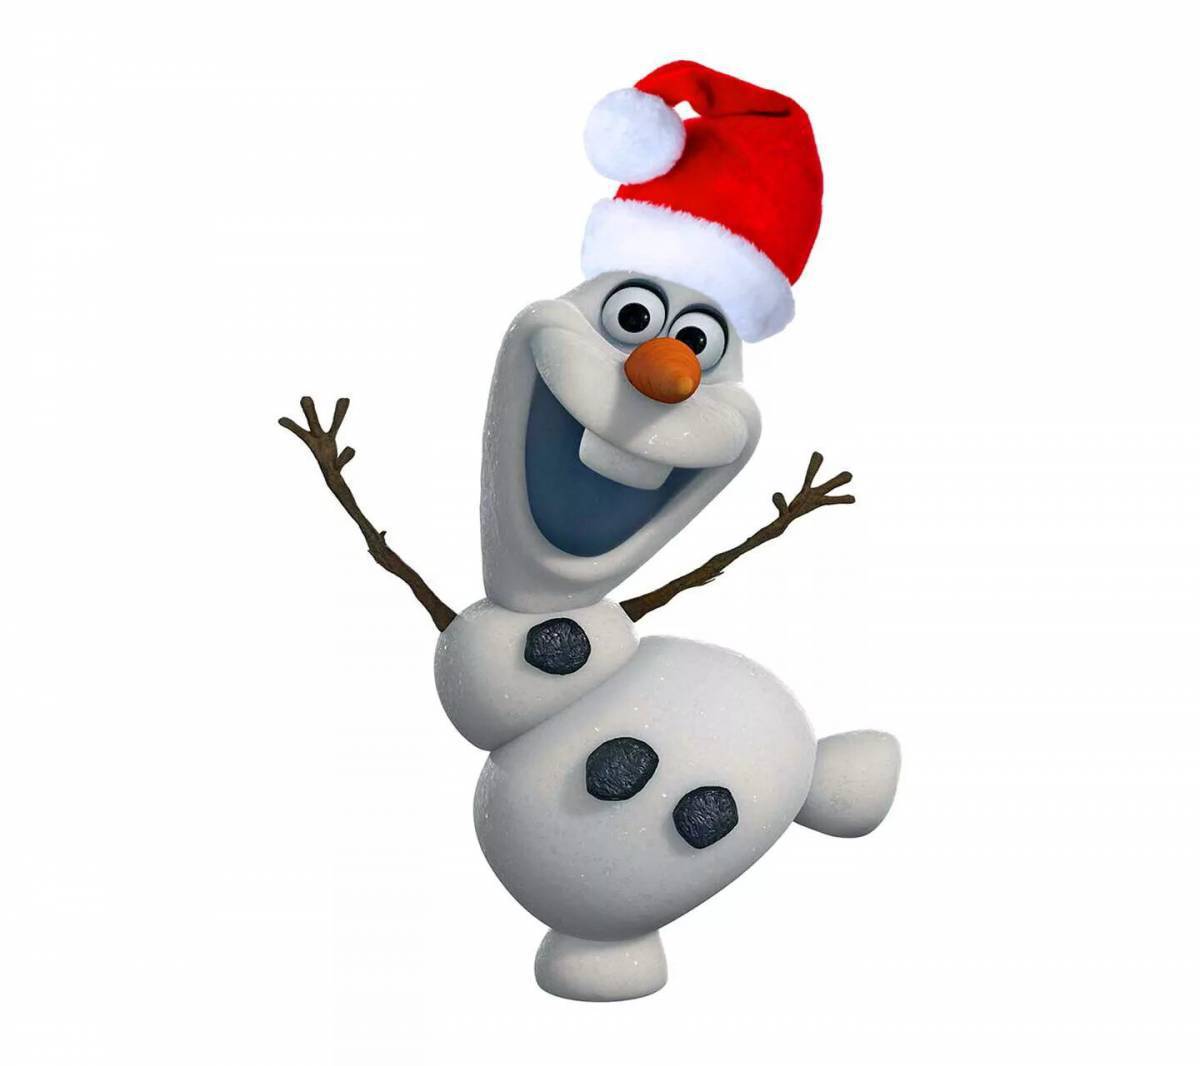 Картинки снеговика из мультика. Олаф Снеговик. Олаф Снеговик новогодний. Олоф Сунден. Снеговик из мультика Холодное сердце.